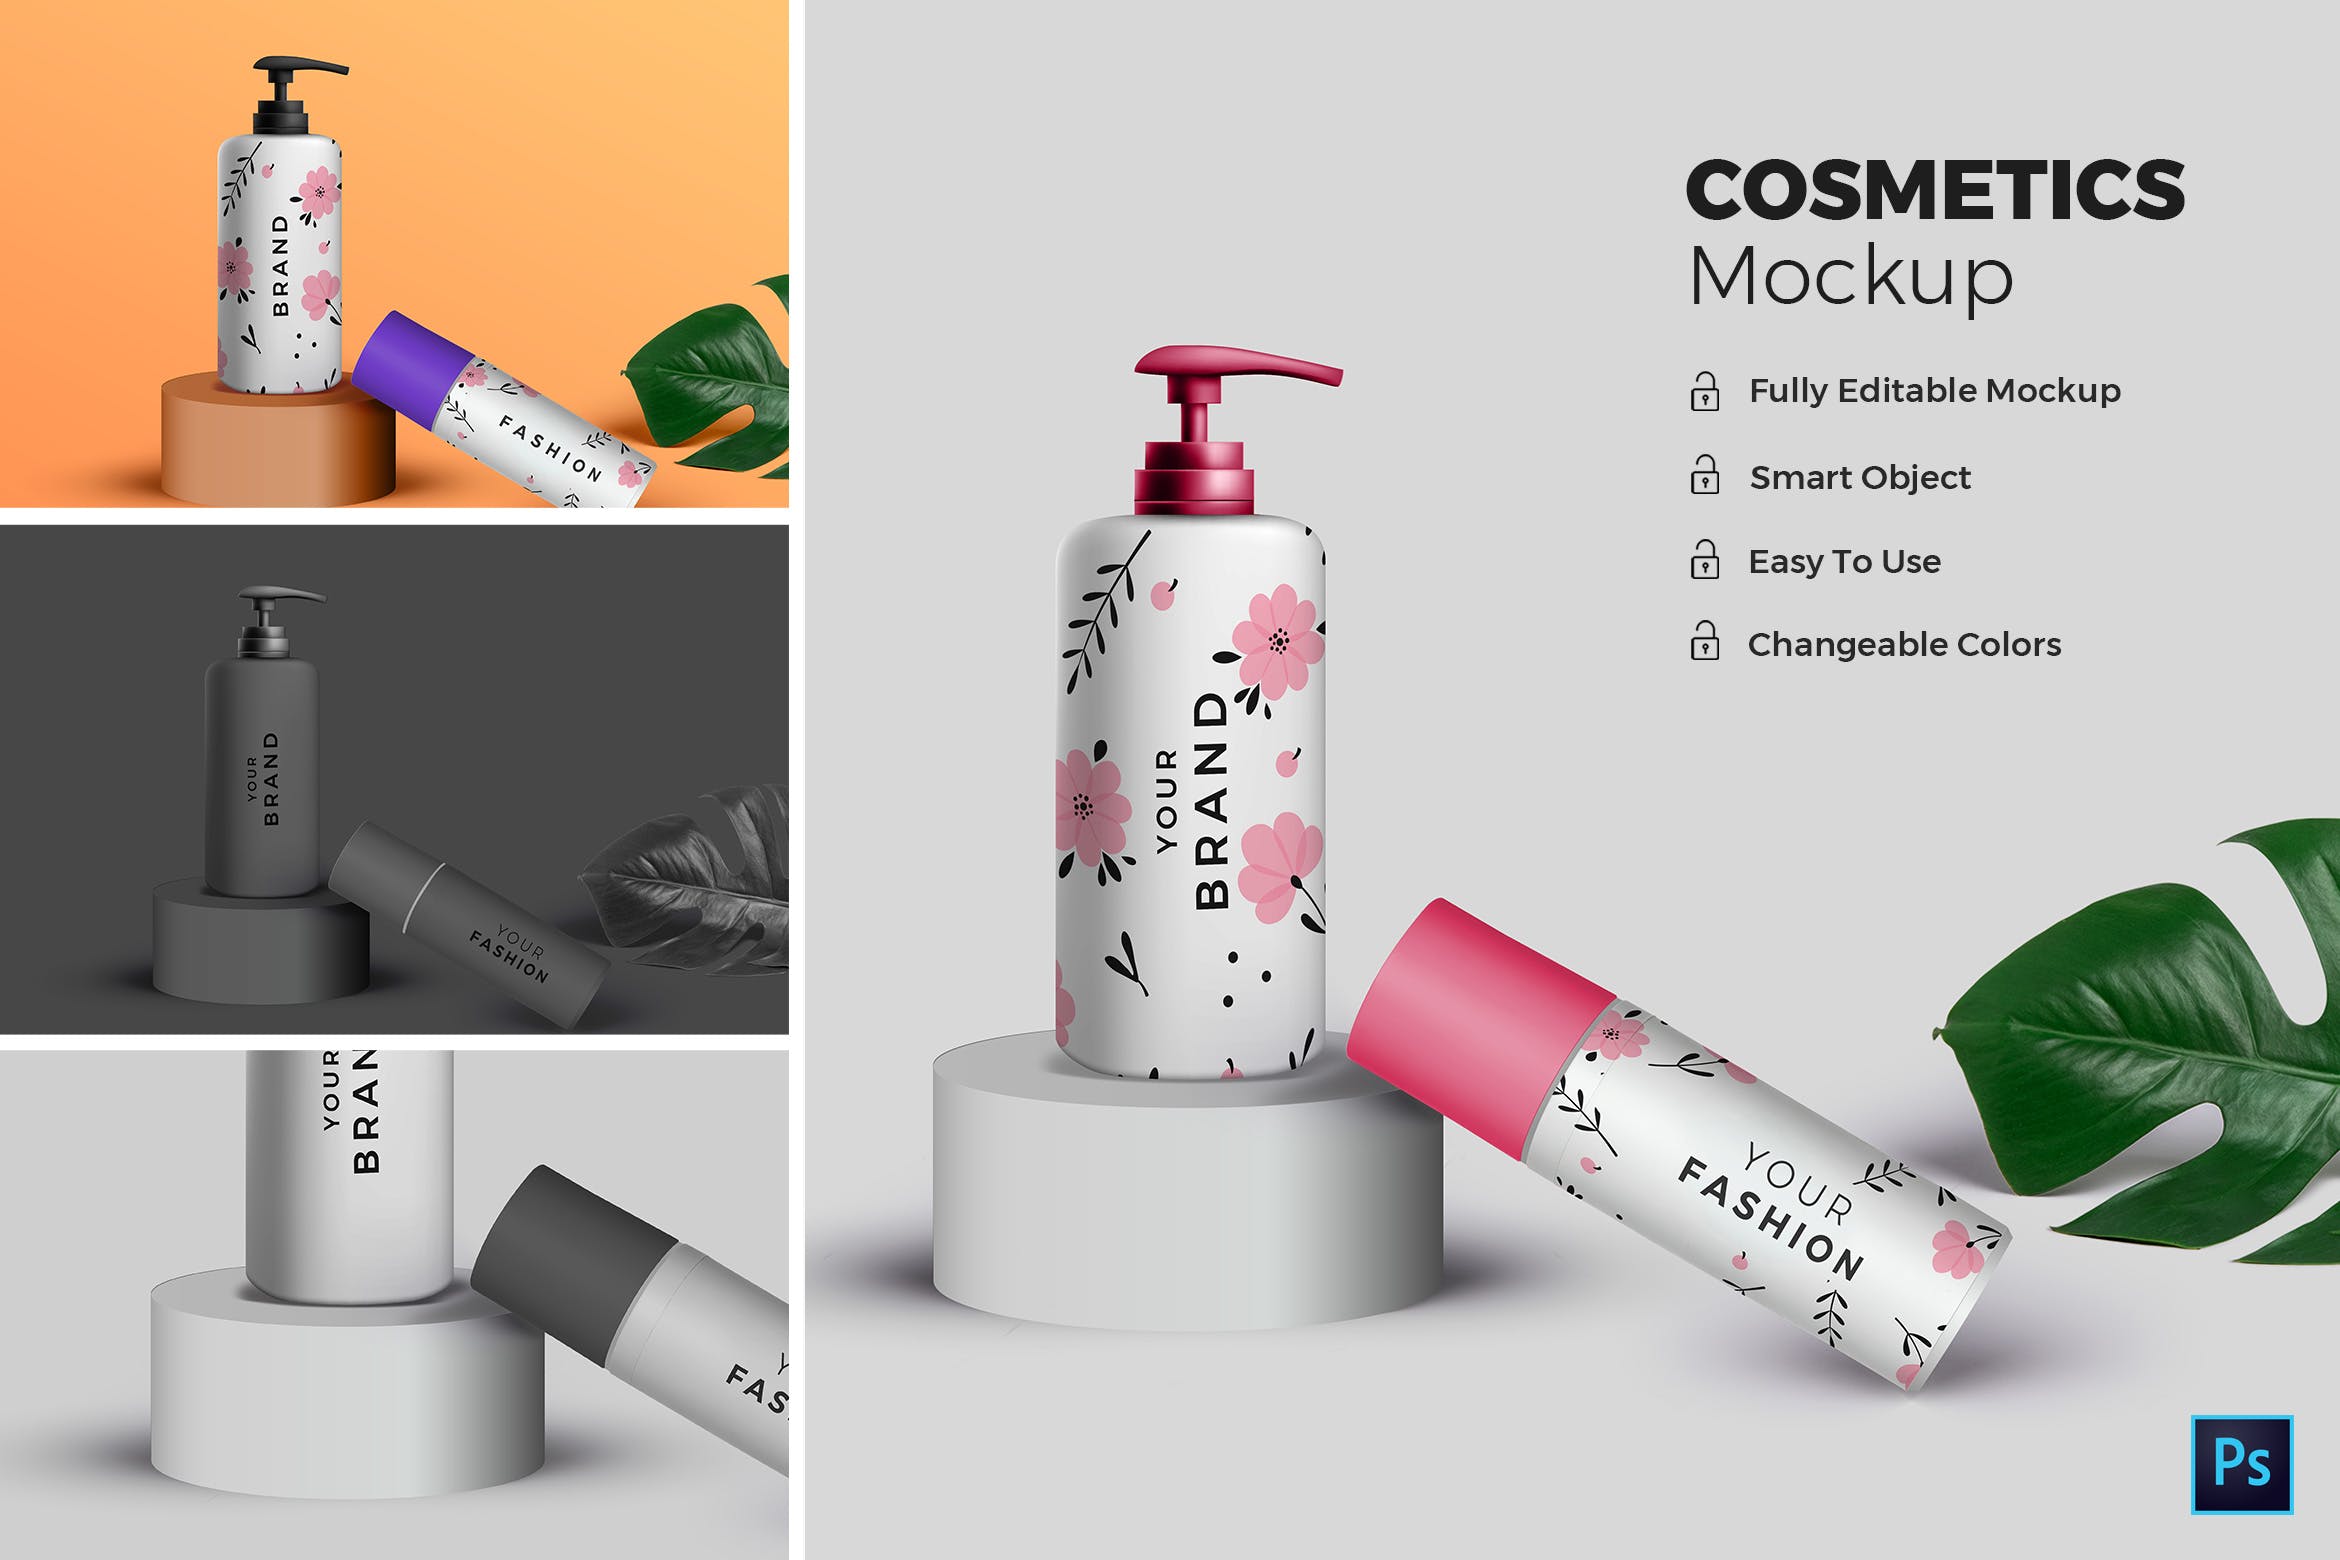 高端化妆品包装外观设计效果图素材中国精选 Cosmetic Mockup插图